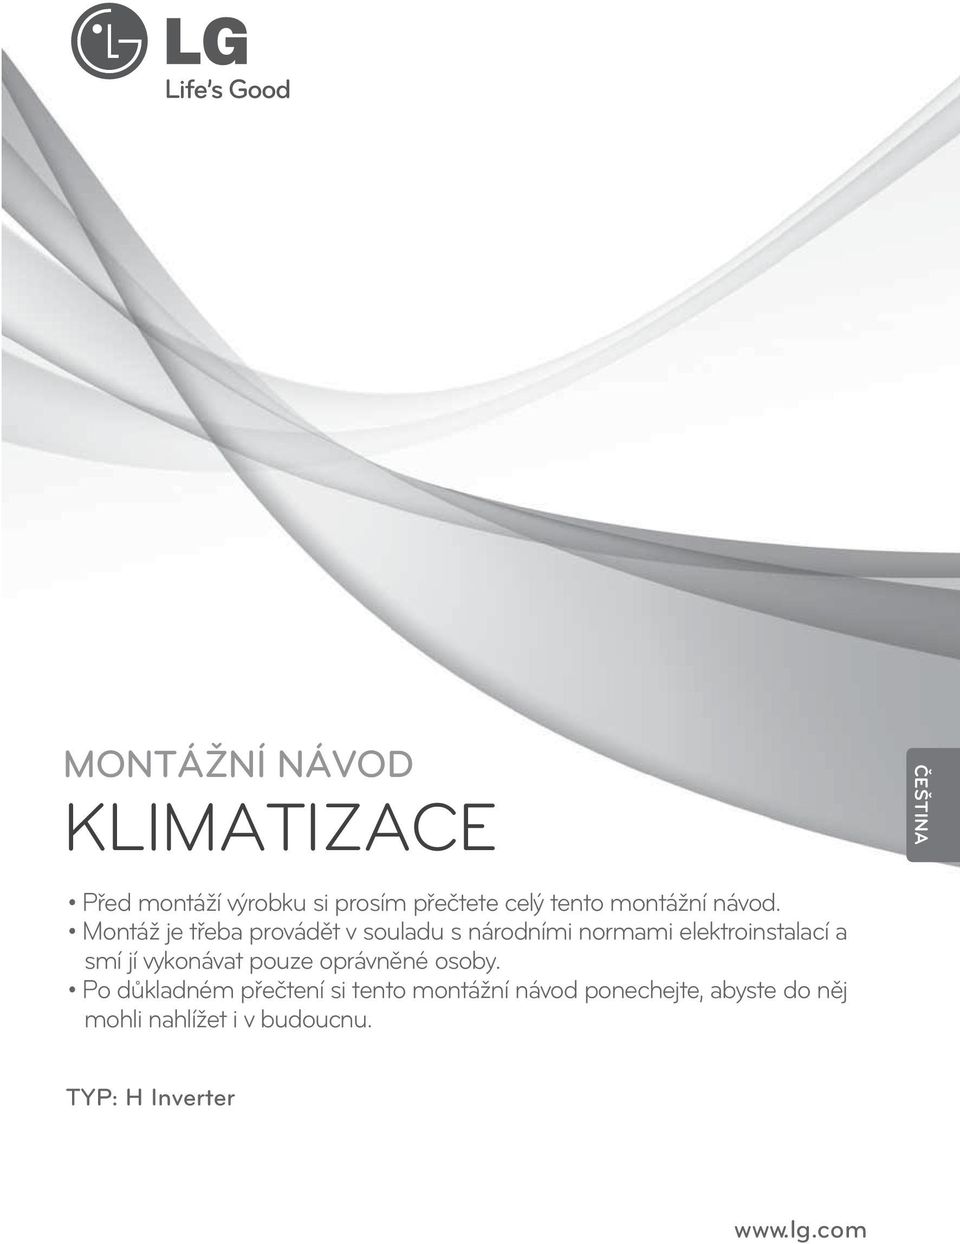 KLIMATIZACE MONTÁŽNÍ NÁVOD - PDF Stažení zdarma